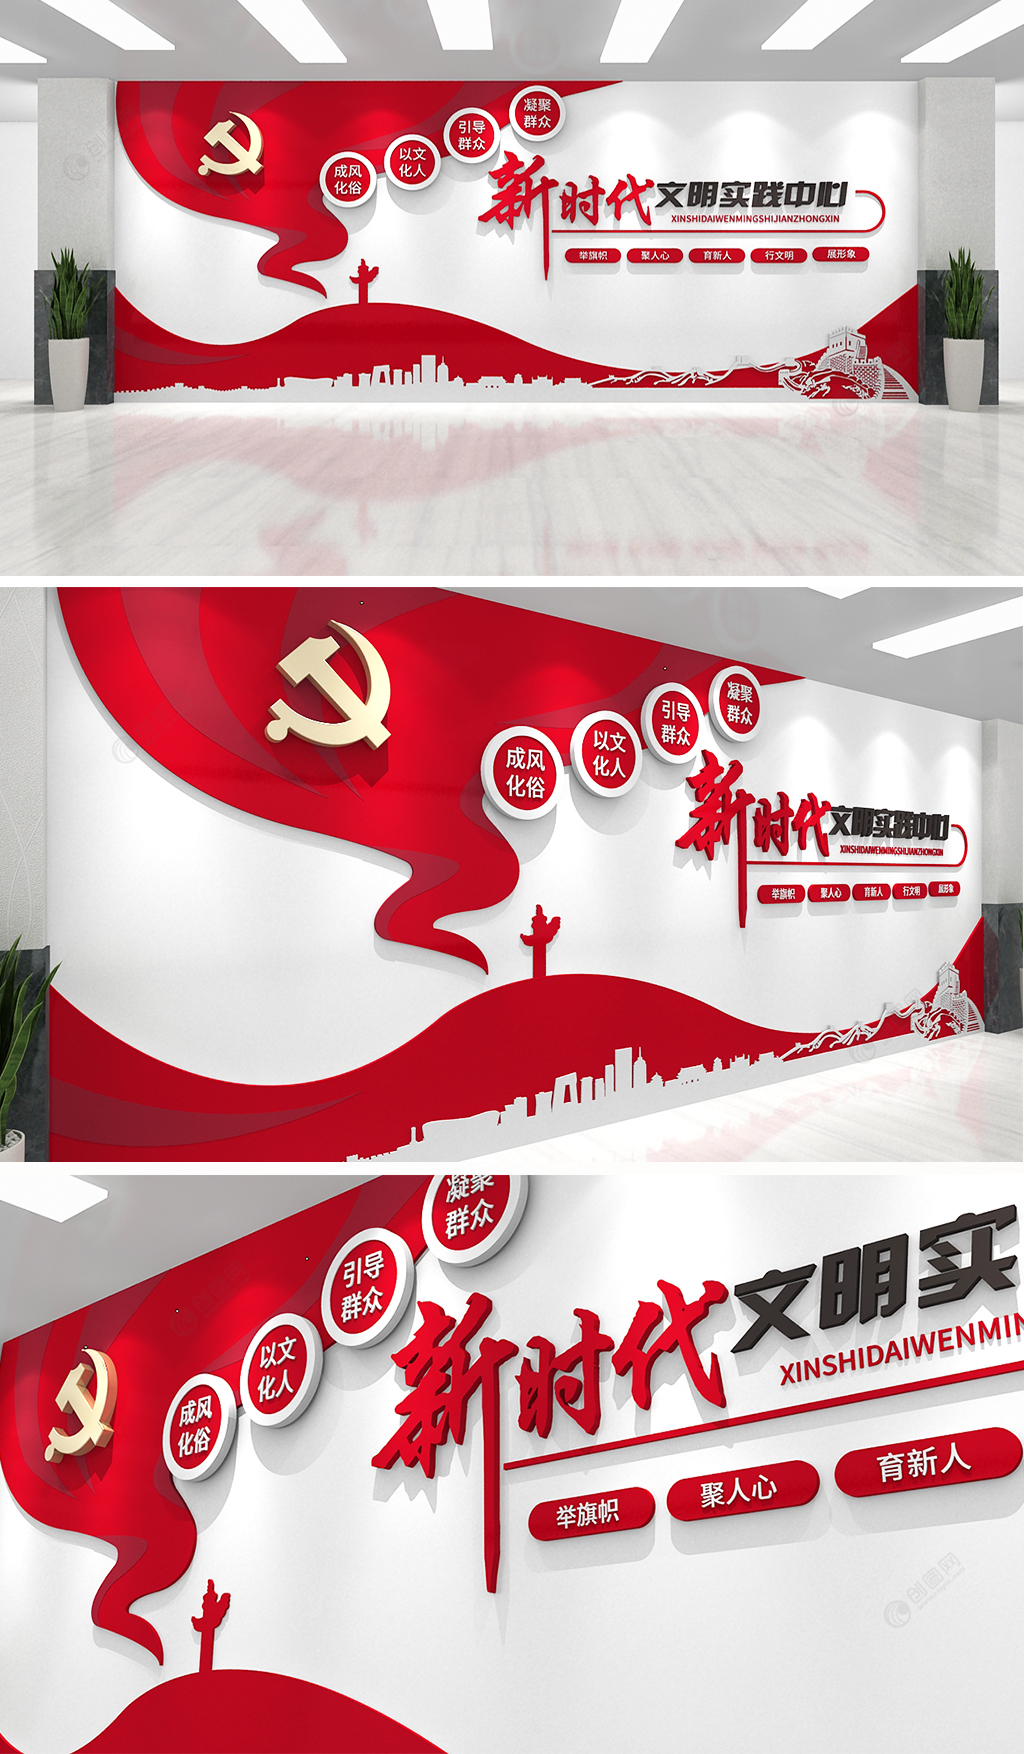 红色飘逸飘带新时代文明实践中心站党建文化墙